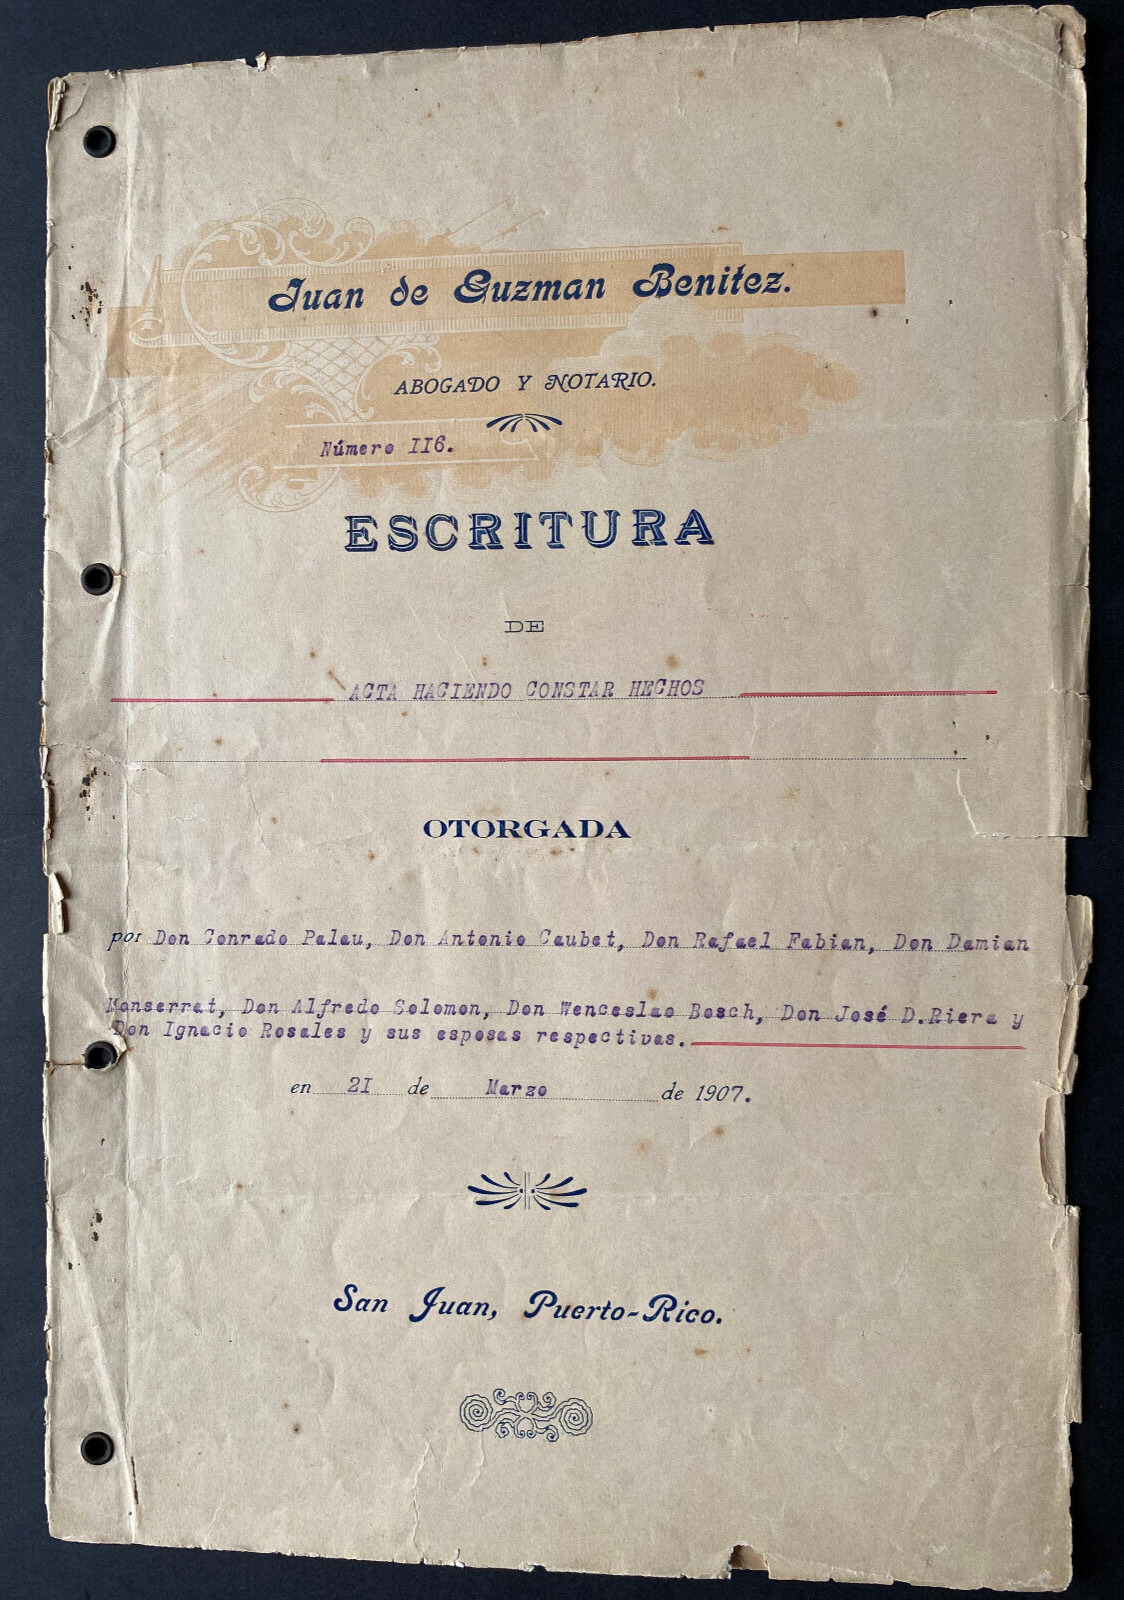 Puerto Rico 1907, ESCRITURA Constar Hechos-Ventas, 10pgs, Excise Tax Stamps